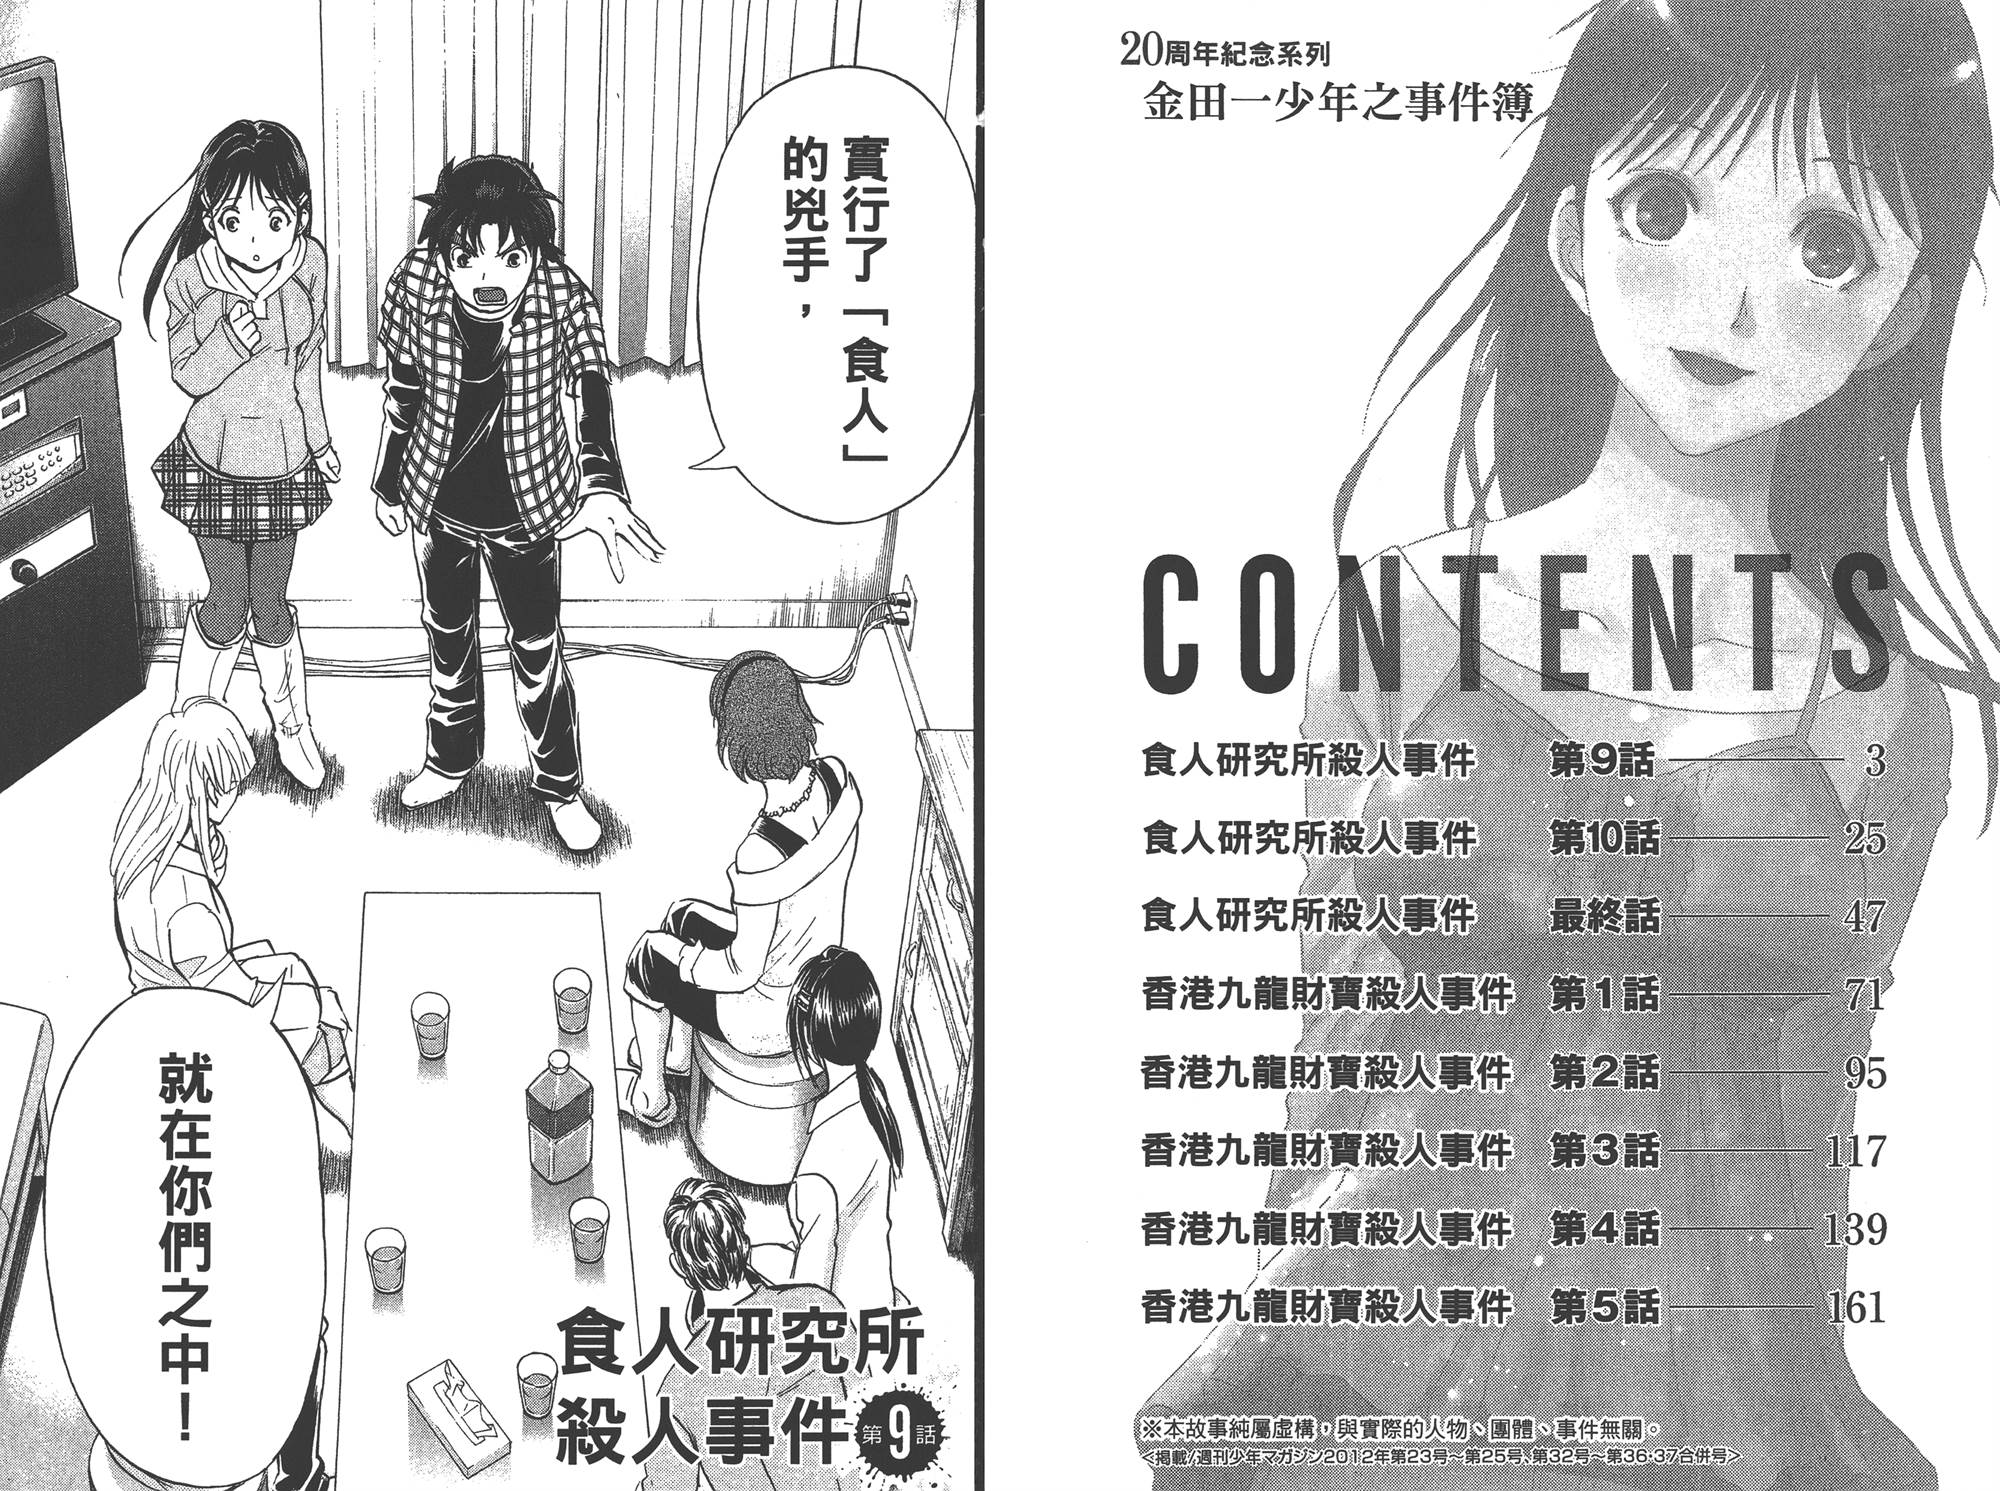 金田一少年之事件簿 周年紀念2卷 漫畫線上看 動漫戲說 Acgn Cc